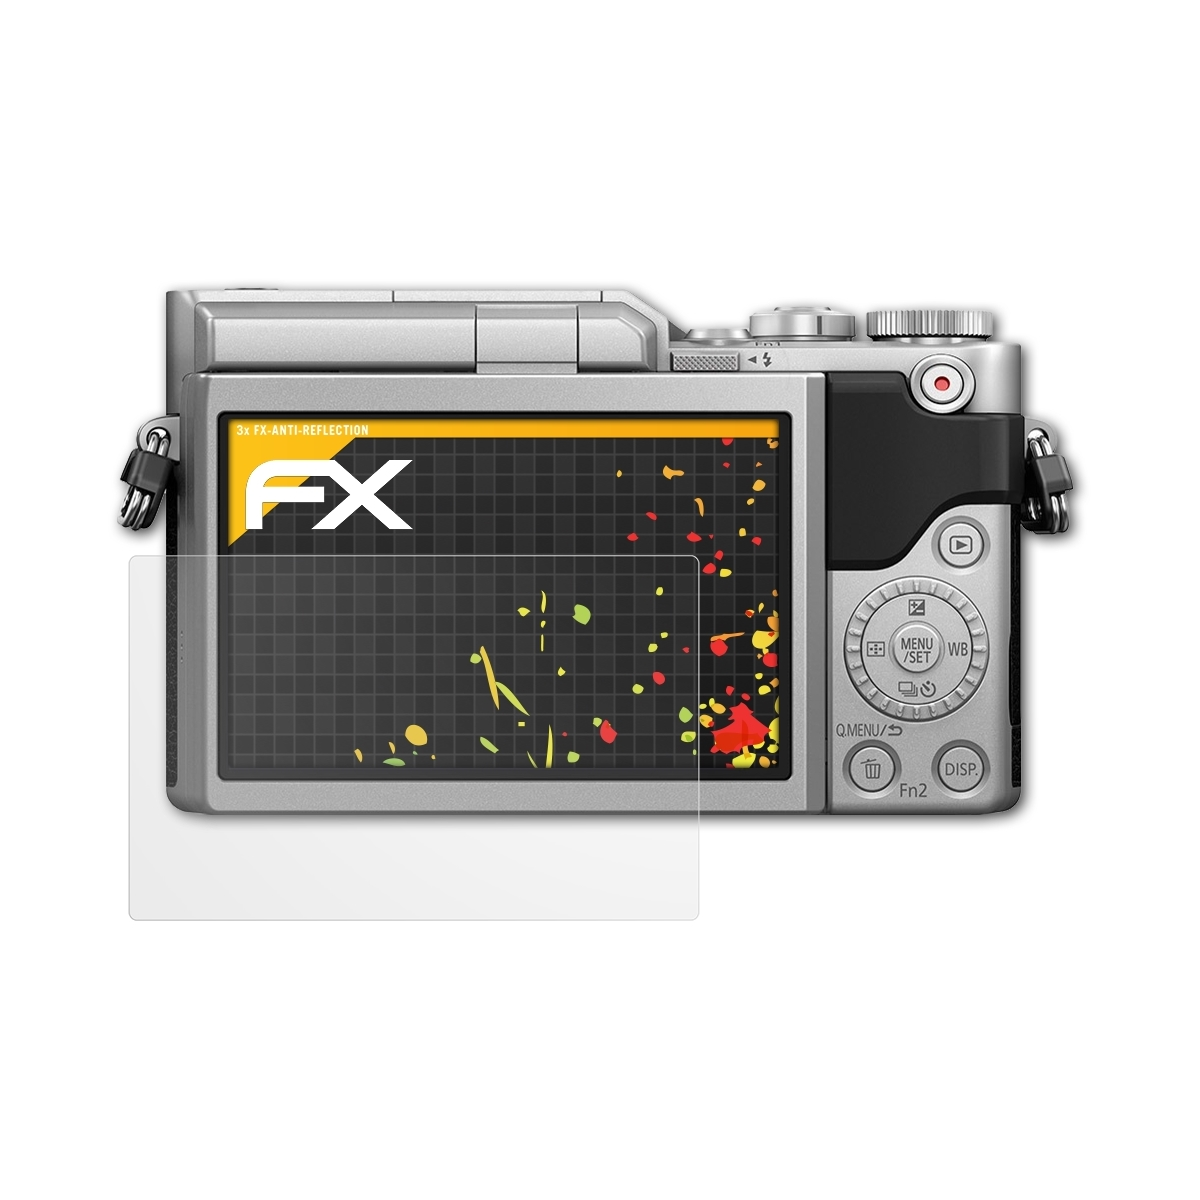 ATFOLIX 3x FX-Antireflex Displayschutz(für Panasonic Lumix DC-GX800)